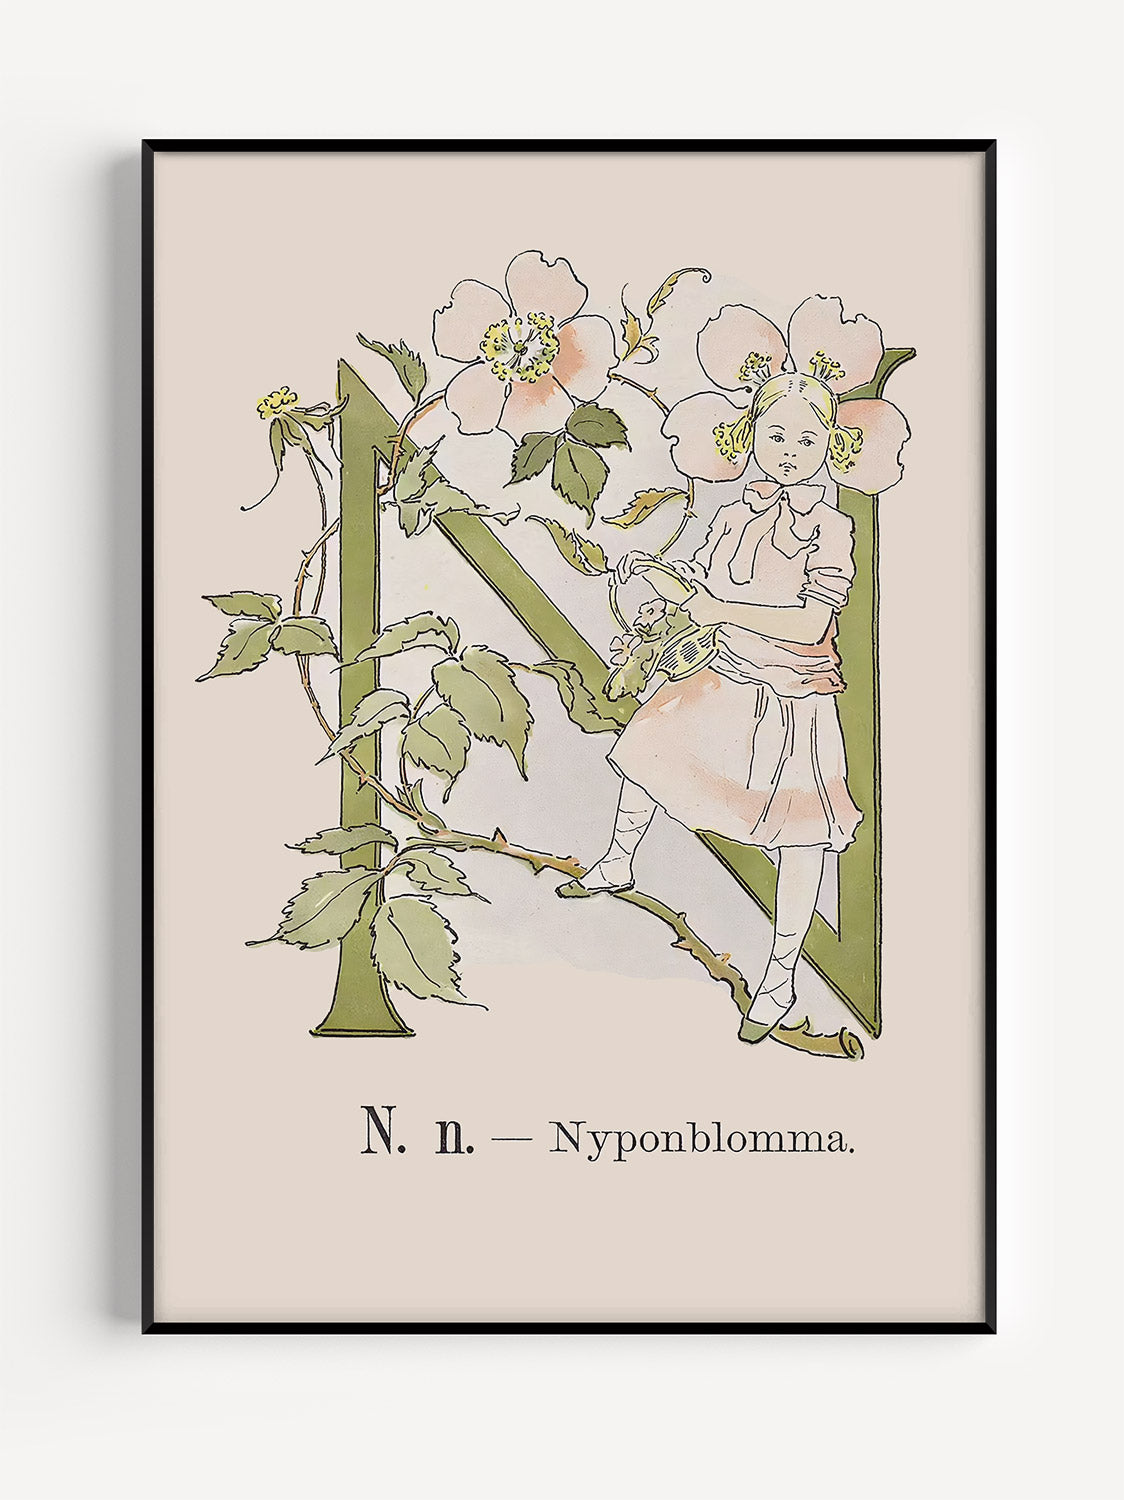 Prinsarnes Alfabet - Bokstaven N - Fine art prints - poster - av Ottilias originalillustrationer från 1800-talet.